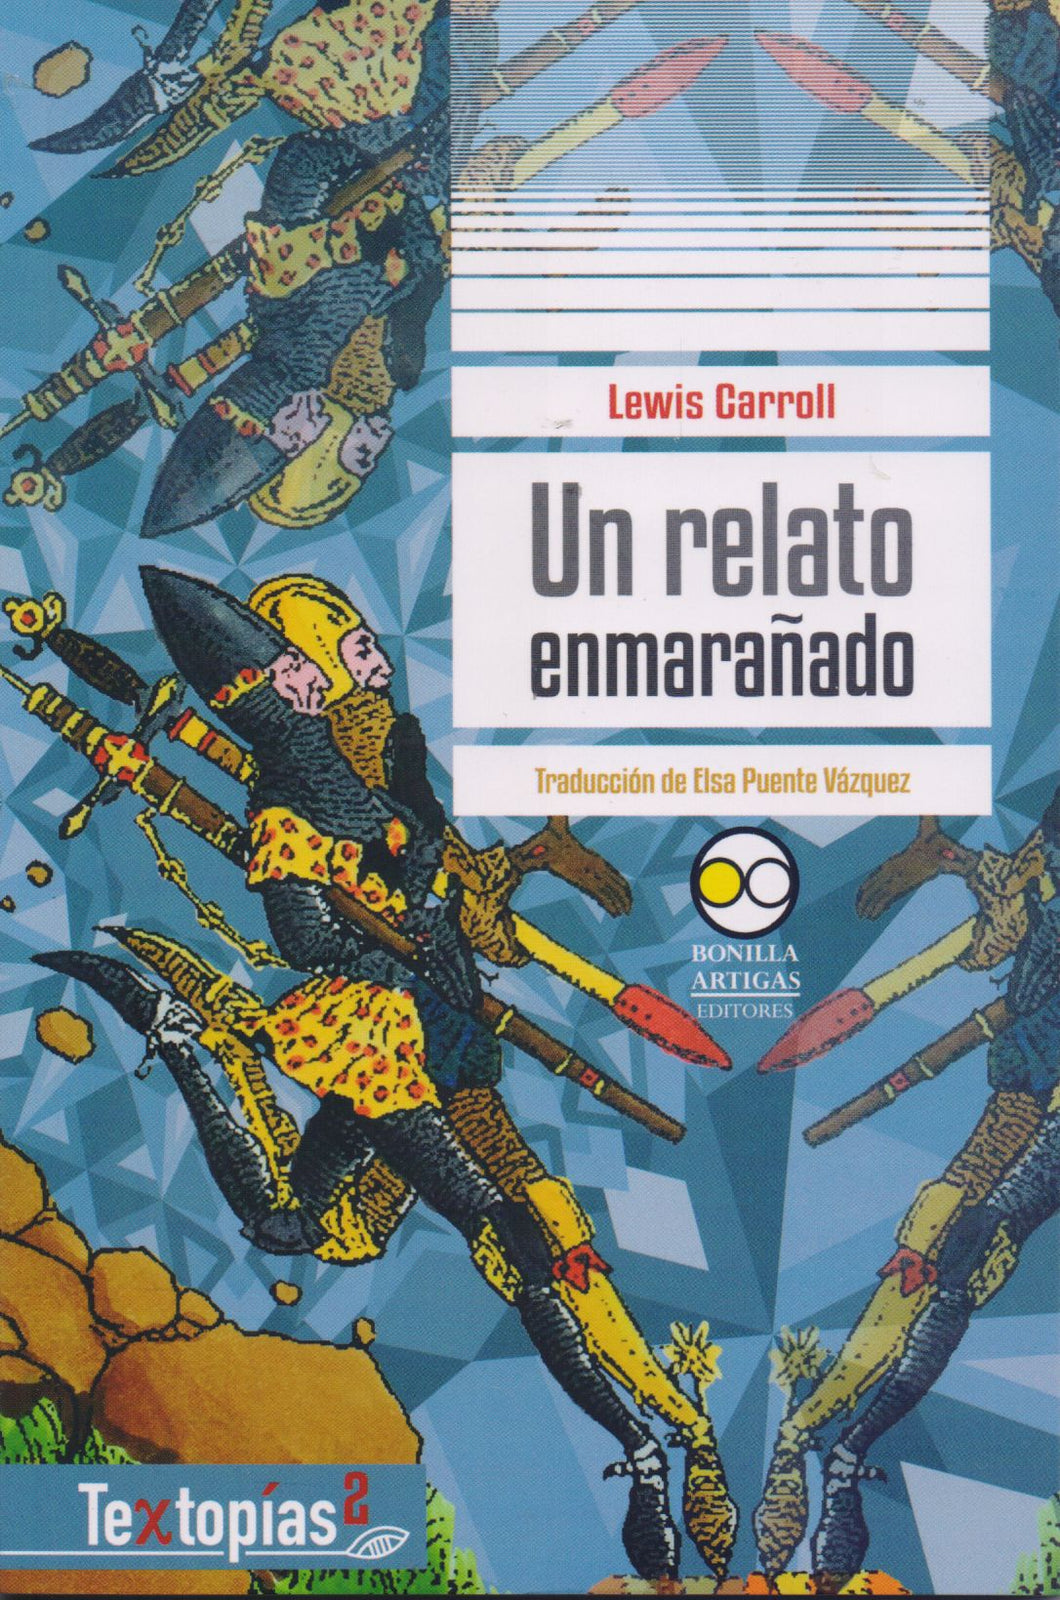 Un relato enmarañado - Lewis Carroll y Elsa Puente Vázquez (trad.)